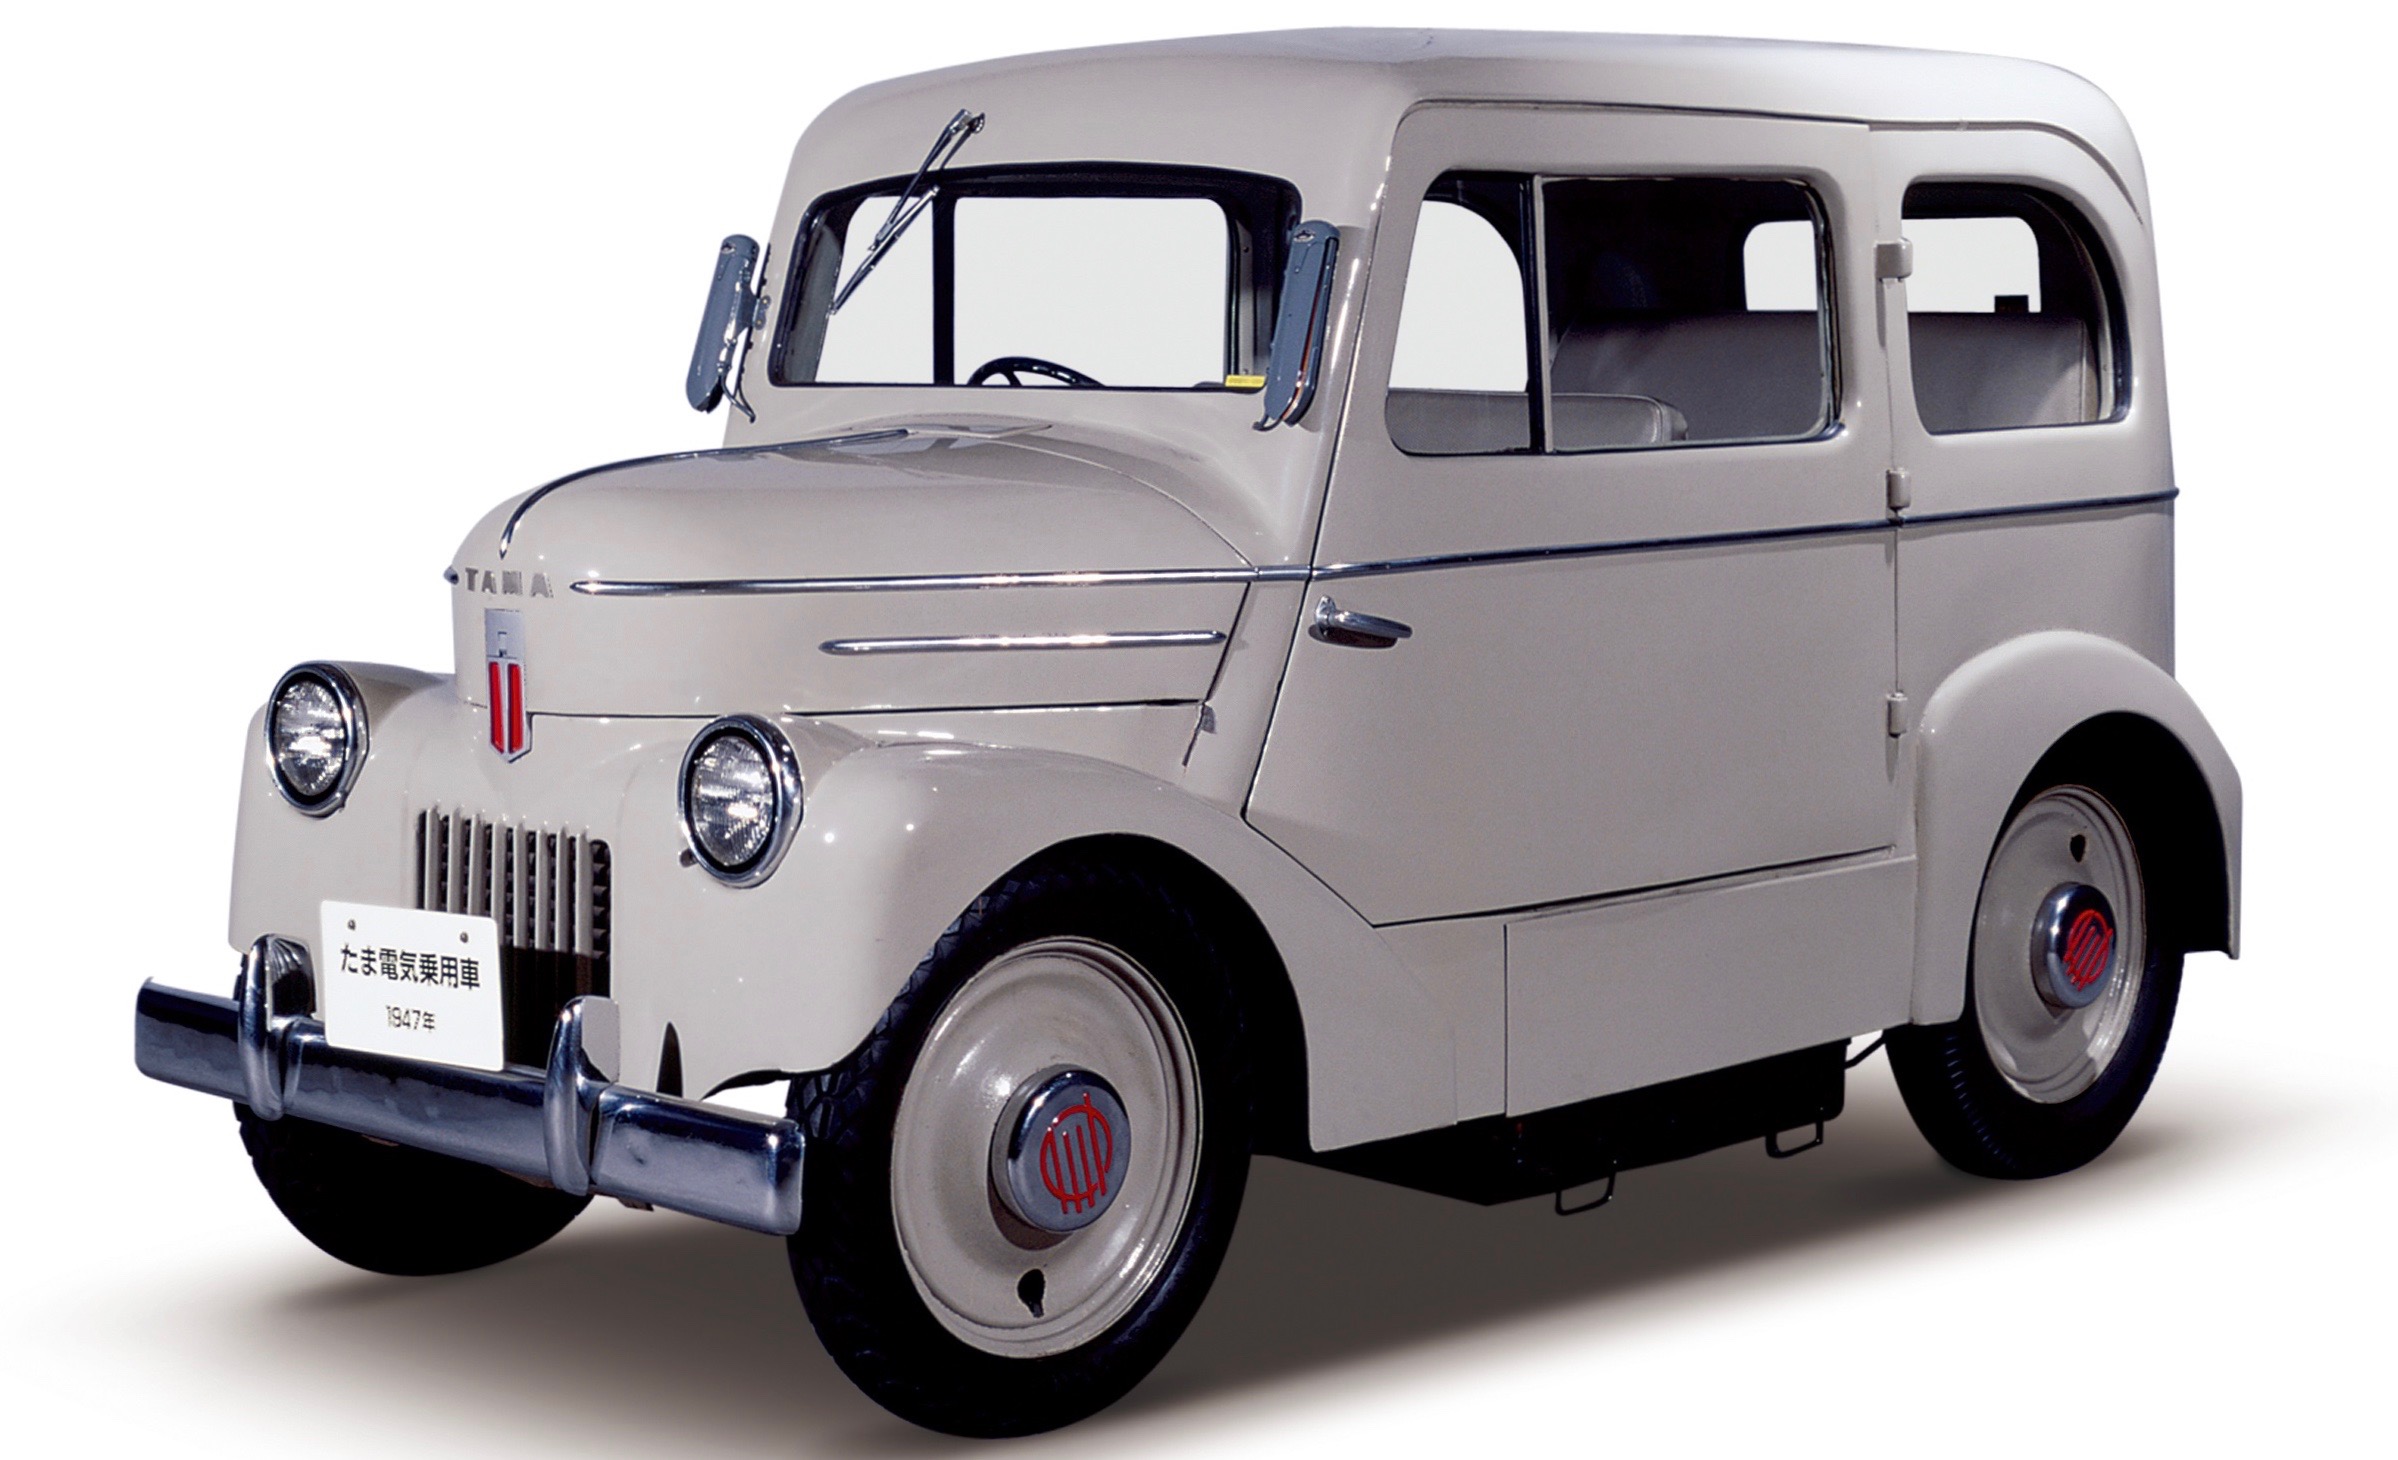 Den elektriske Nissan fra 1947, som hed Tama.